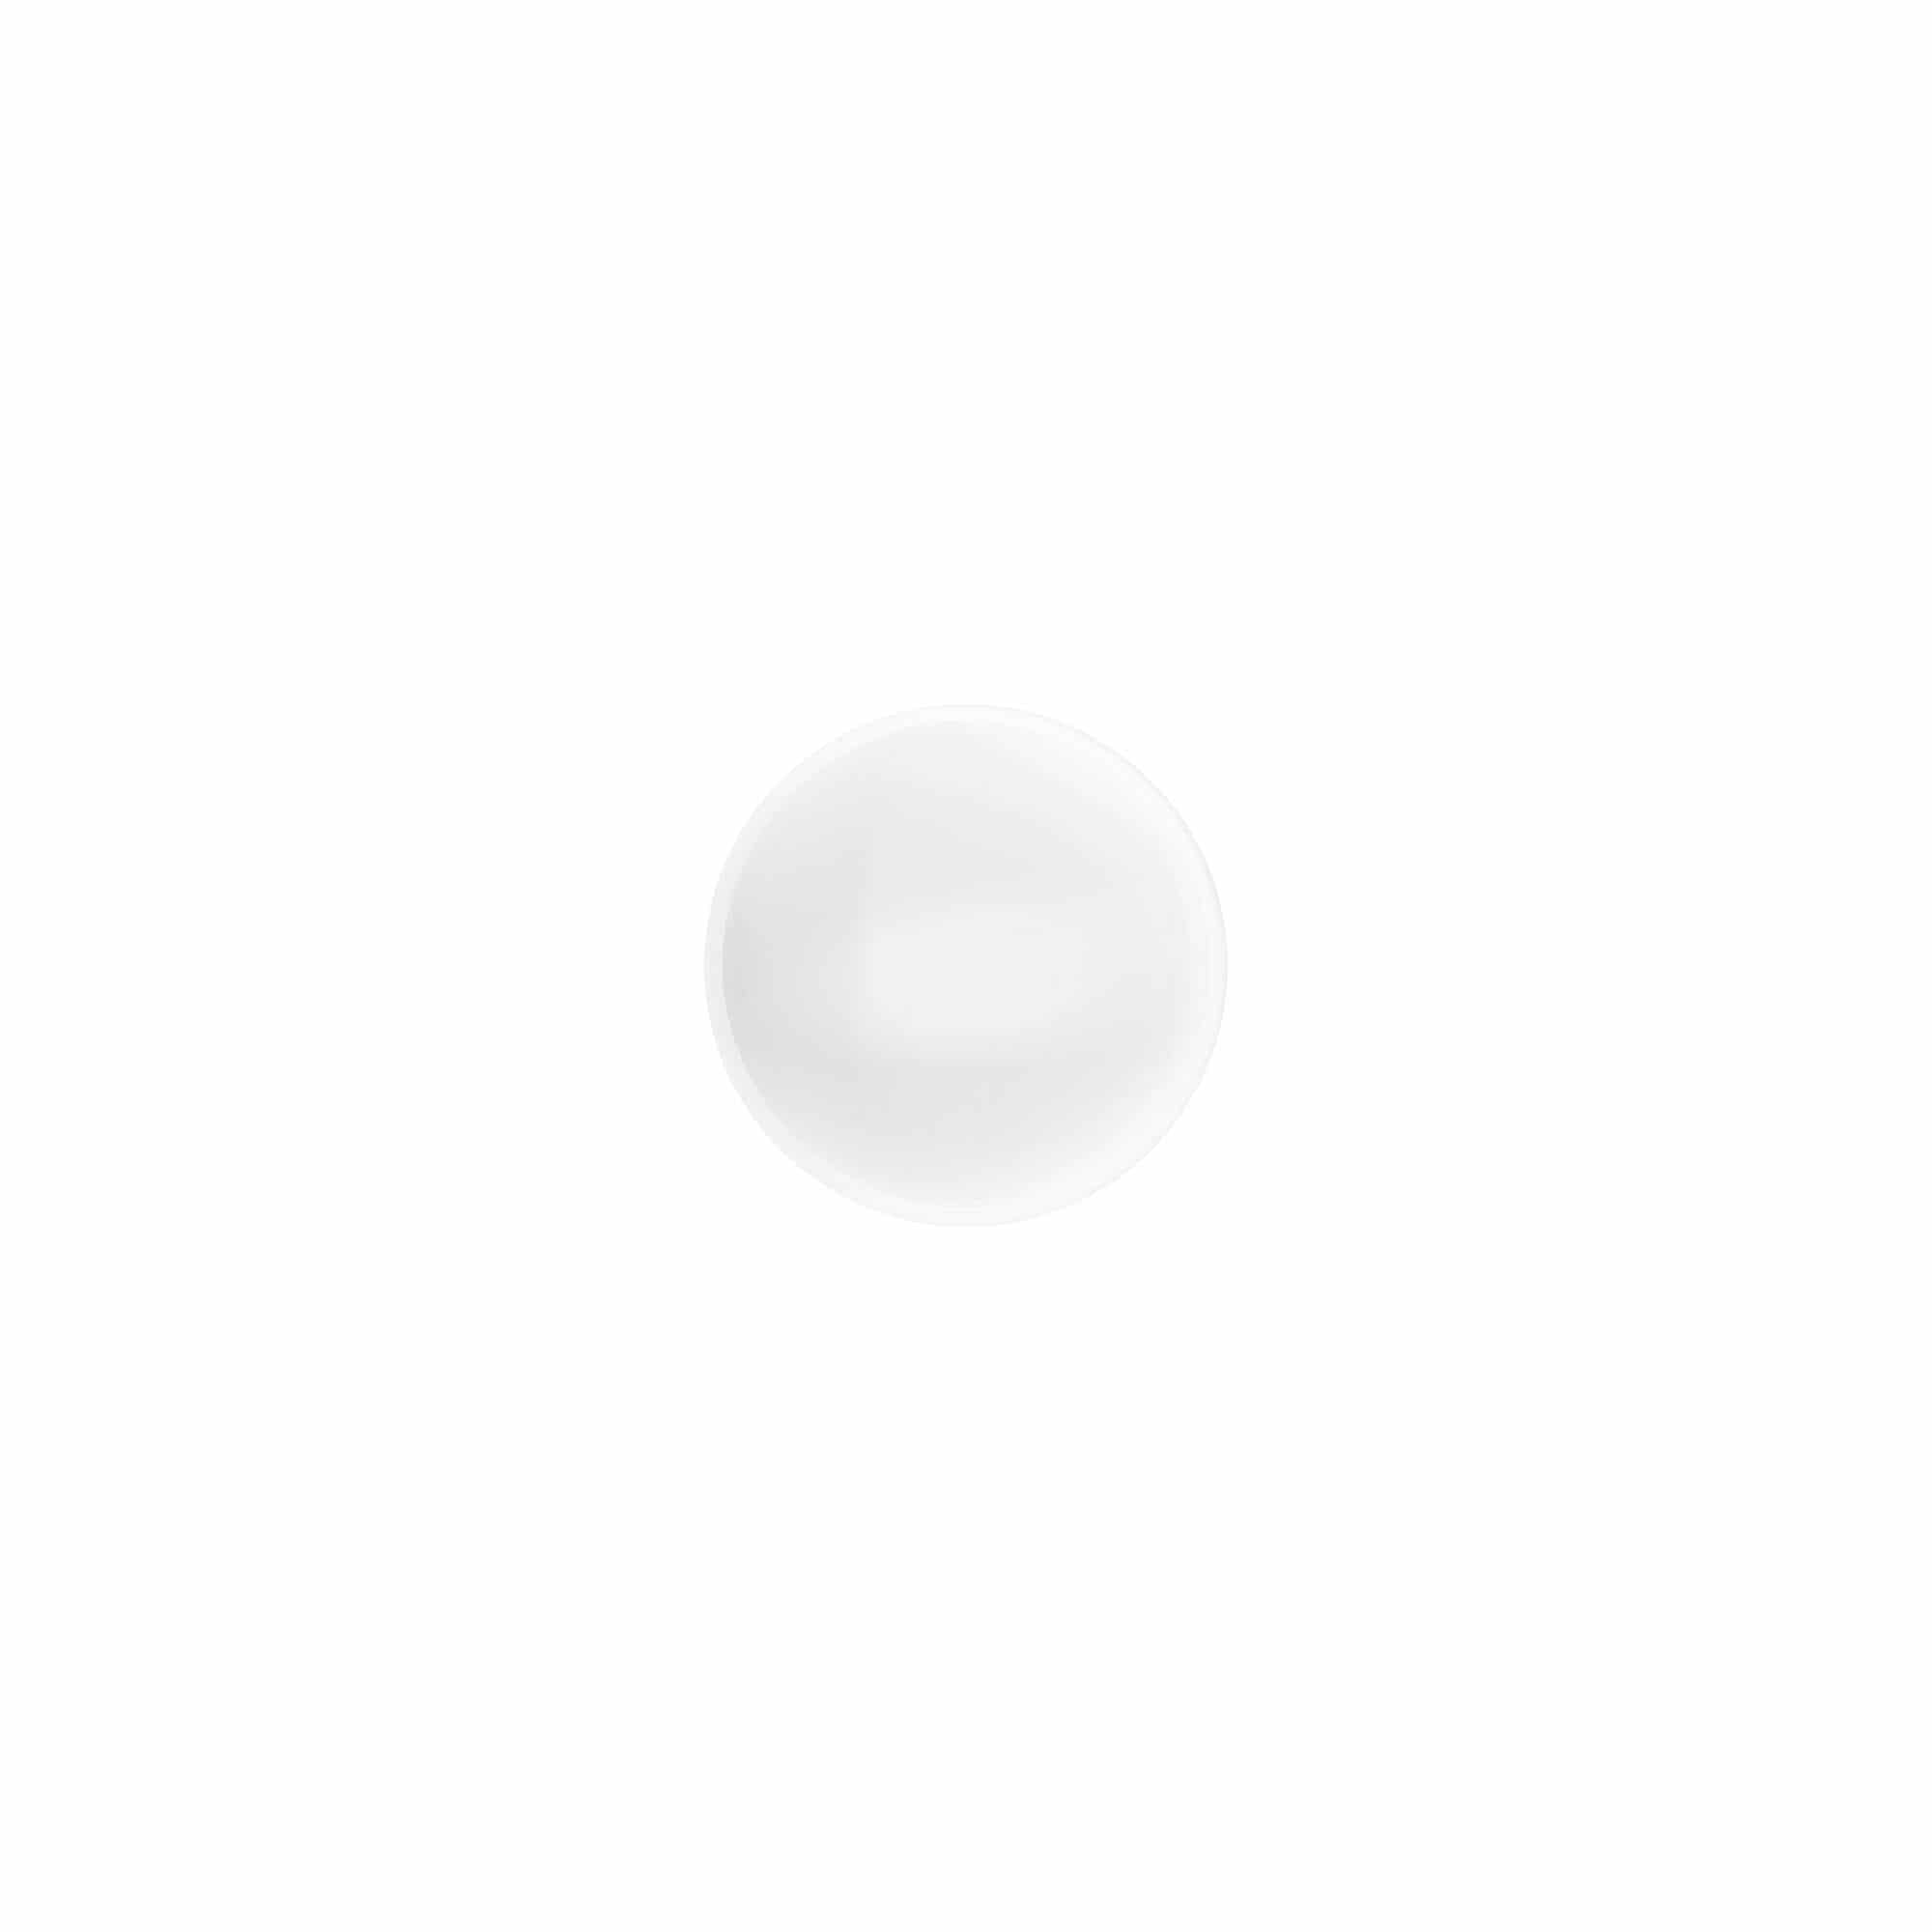 Zakrętka 'White Line' 12 ml, tworzywo sztuczne PP, kolor biały